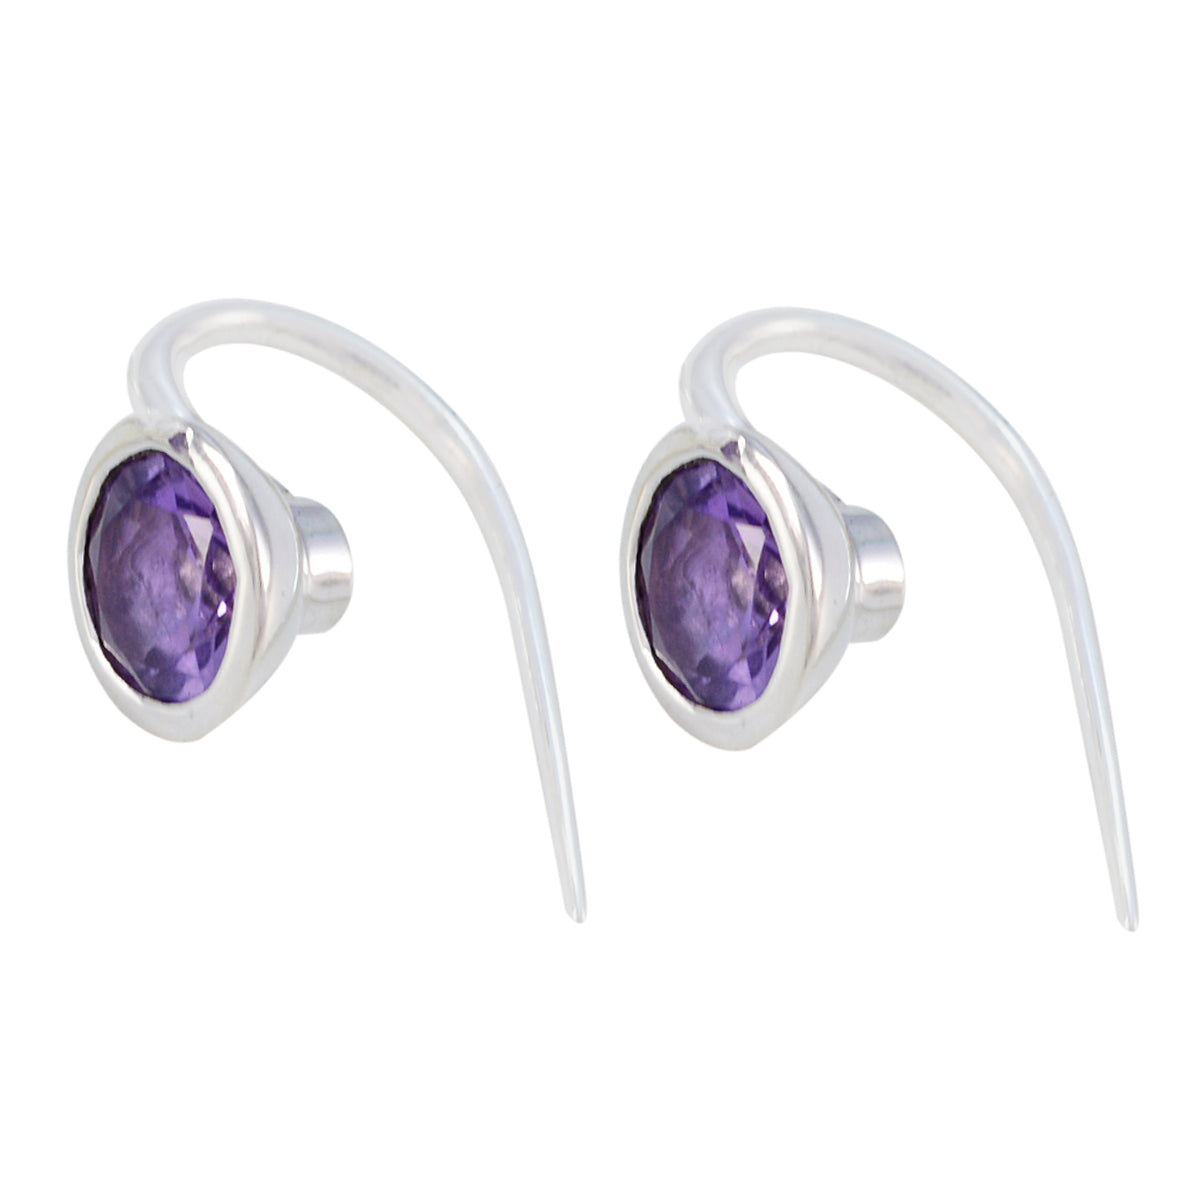 Riyo Real Gemstones round Faceted Purple Amethyst Silver Earrings gift for halloween